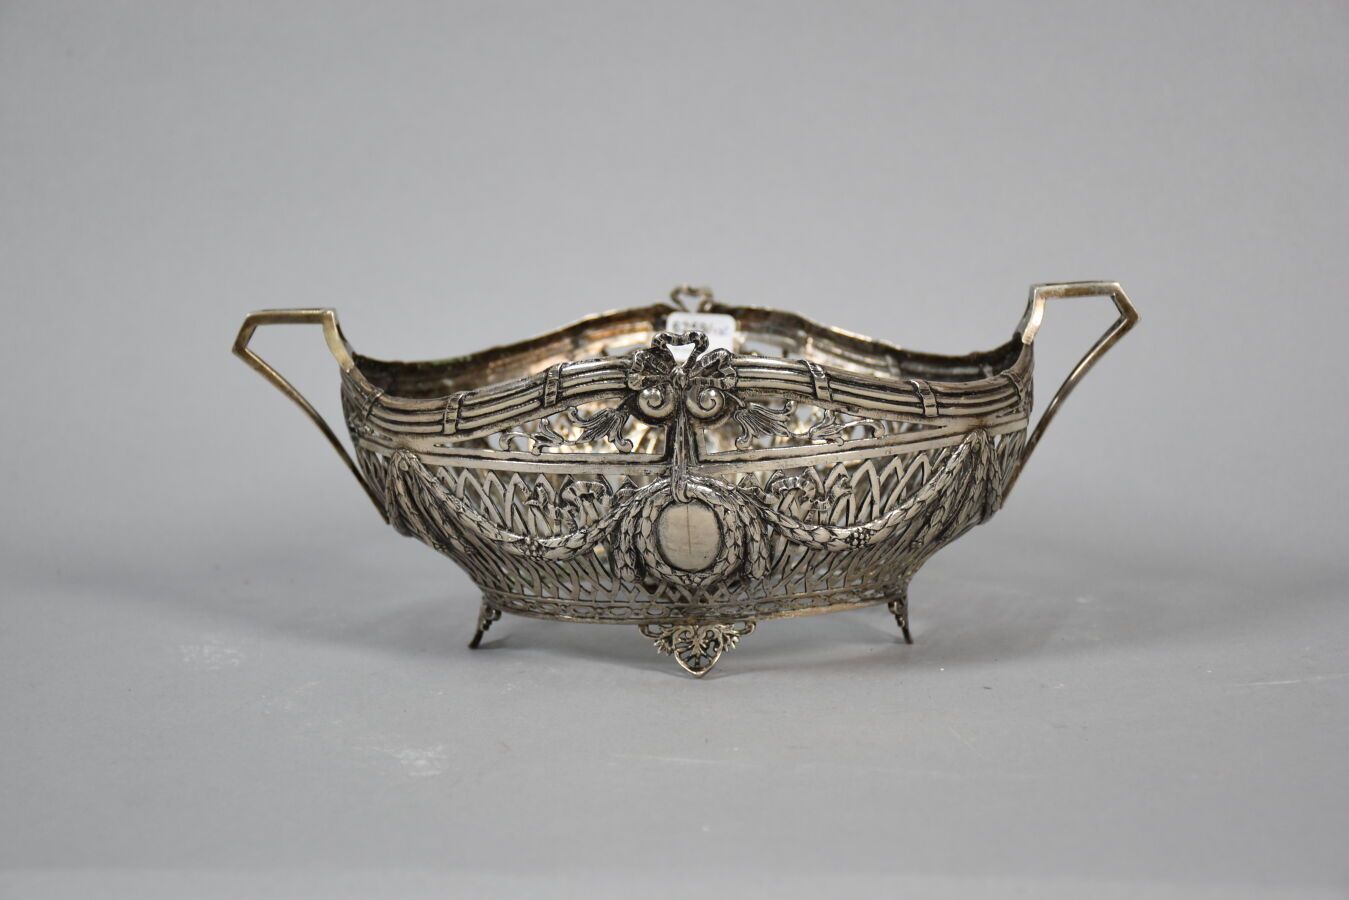 Null 外国银质镂空花篮，路易十六风格，19世纪下半叶

重量426克

视觉检查后有待进一步研究的标志